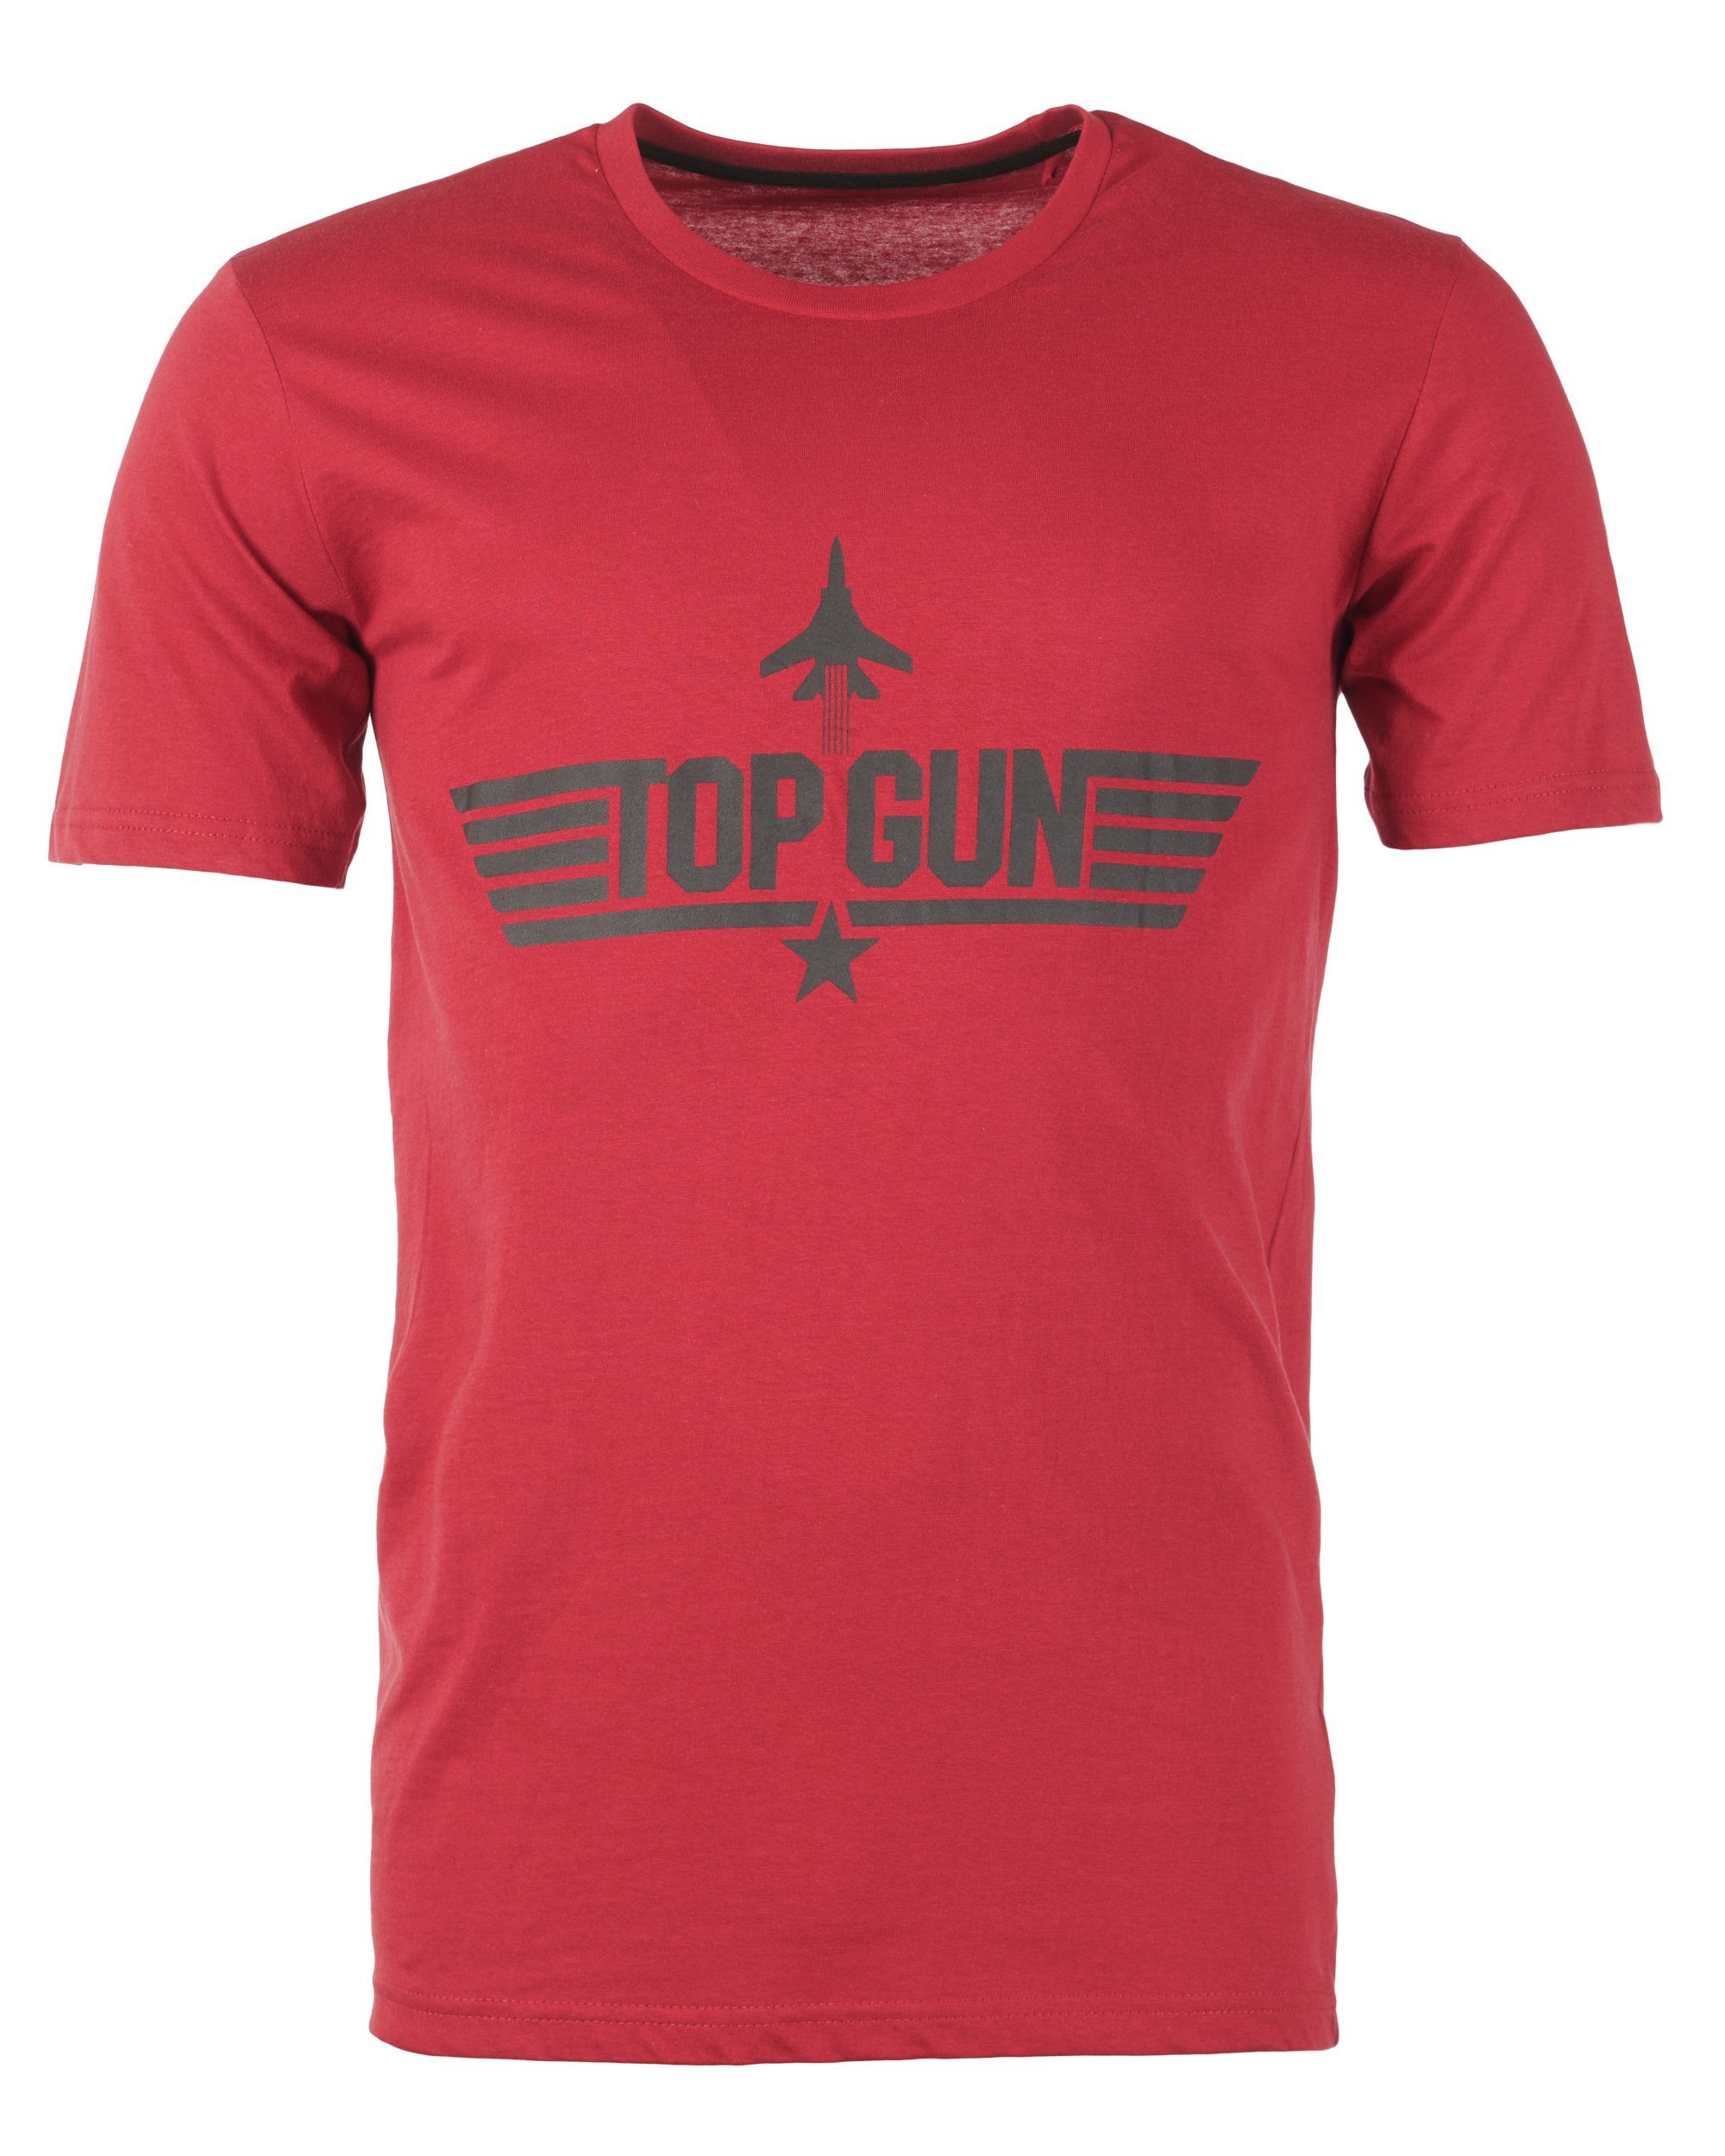 T-Shirt TOP GUN red PP201011